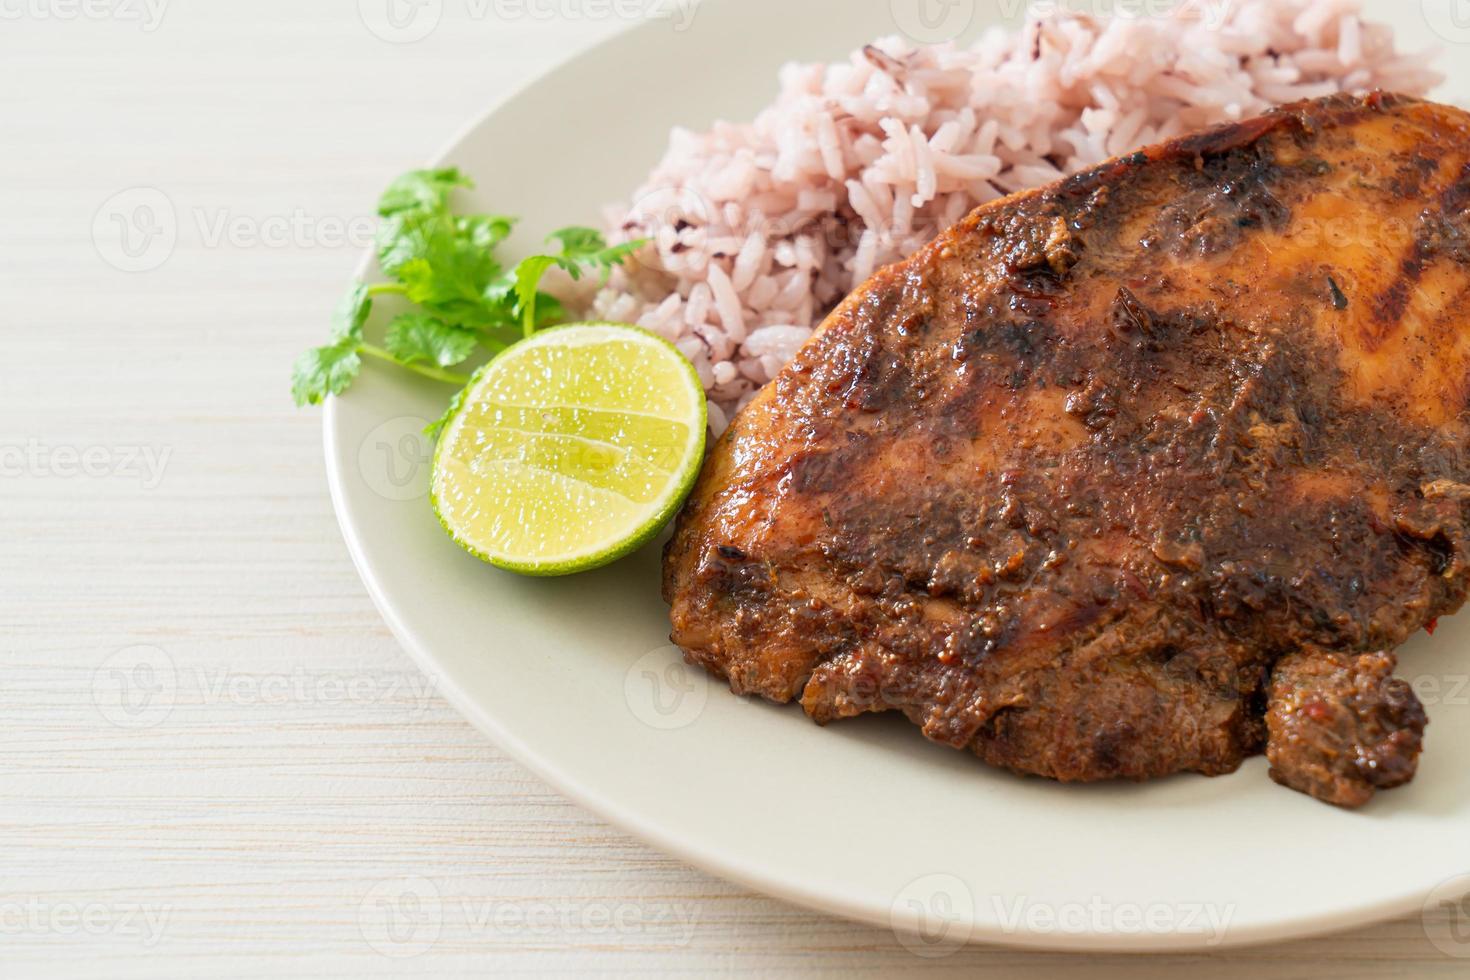 pollo jerk giamaicano alla griglia piccante con riso - stile alimentare giamaicano foto